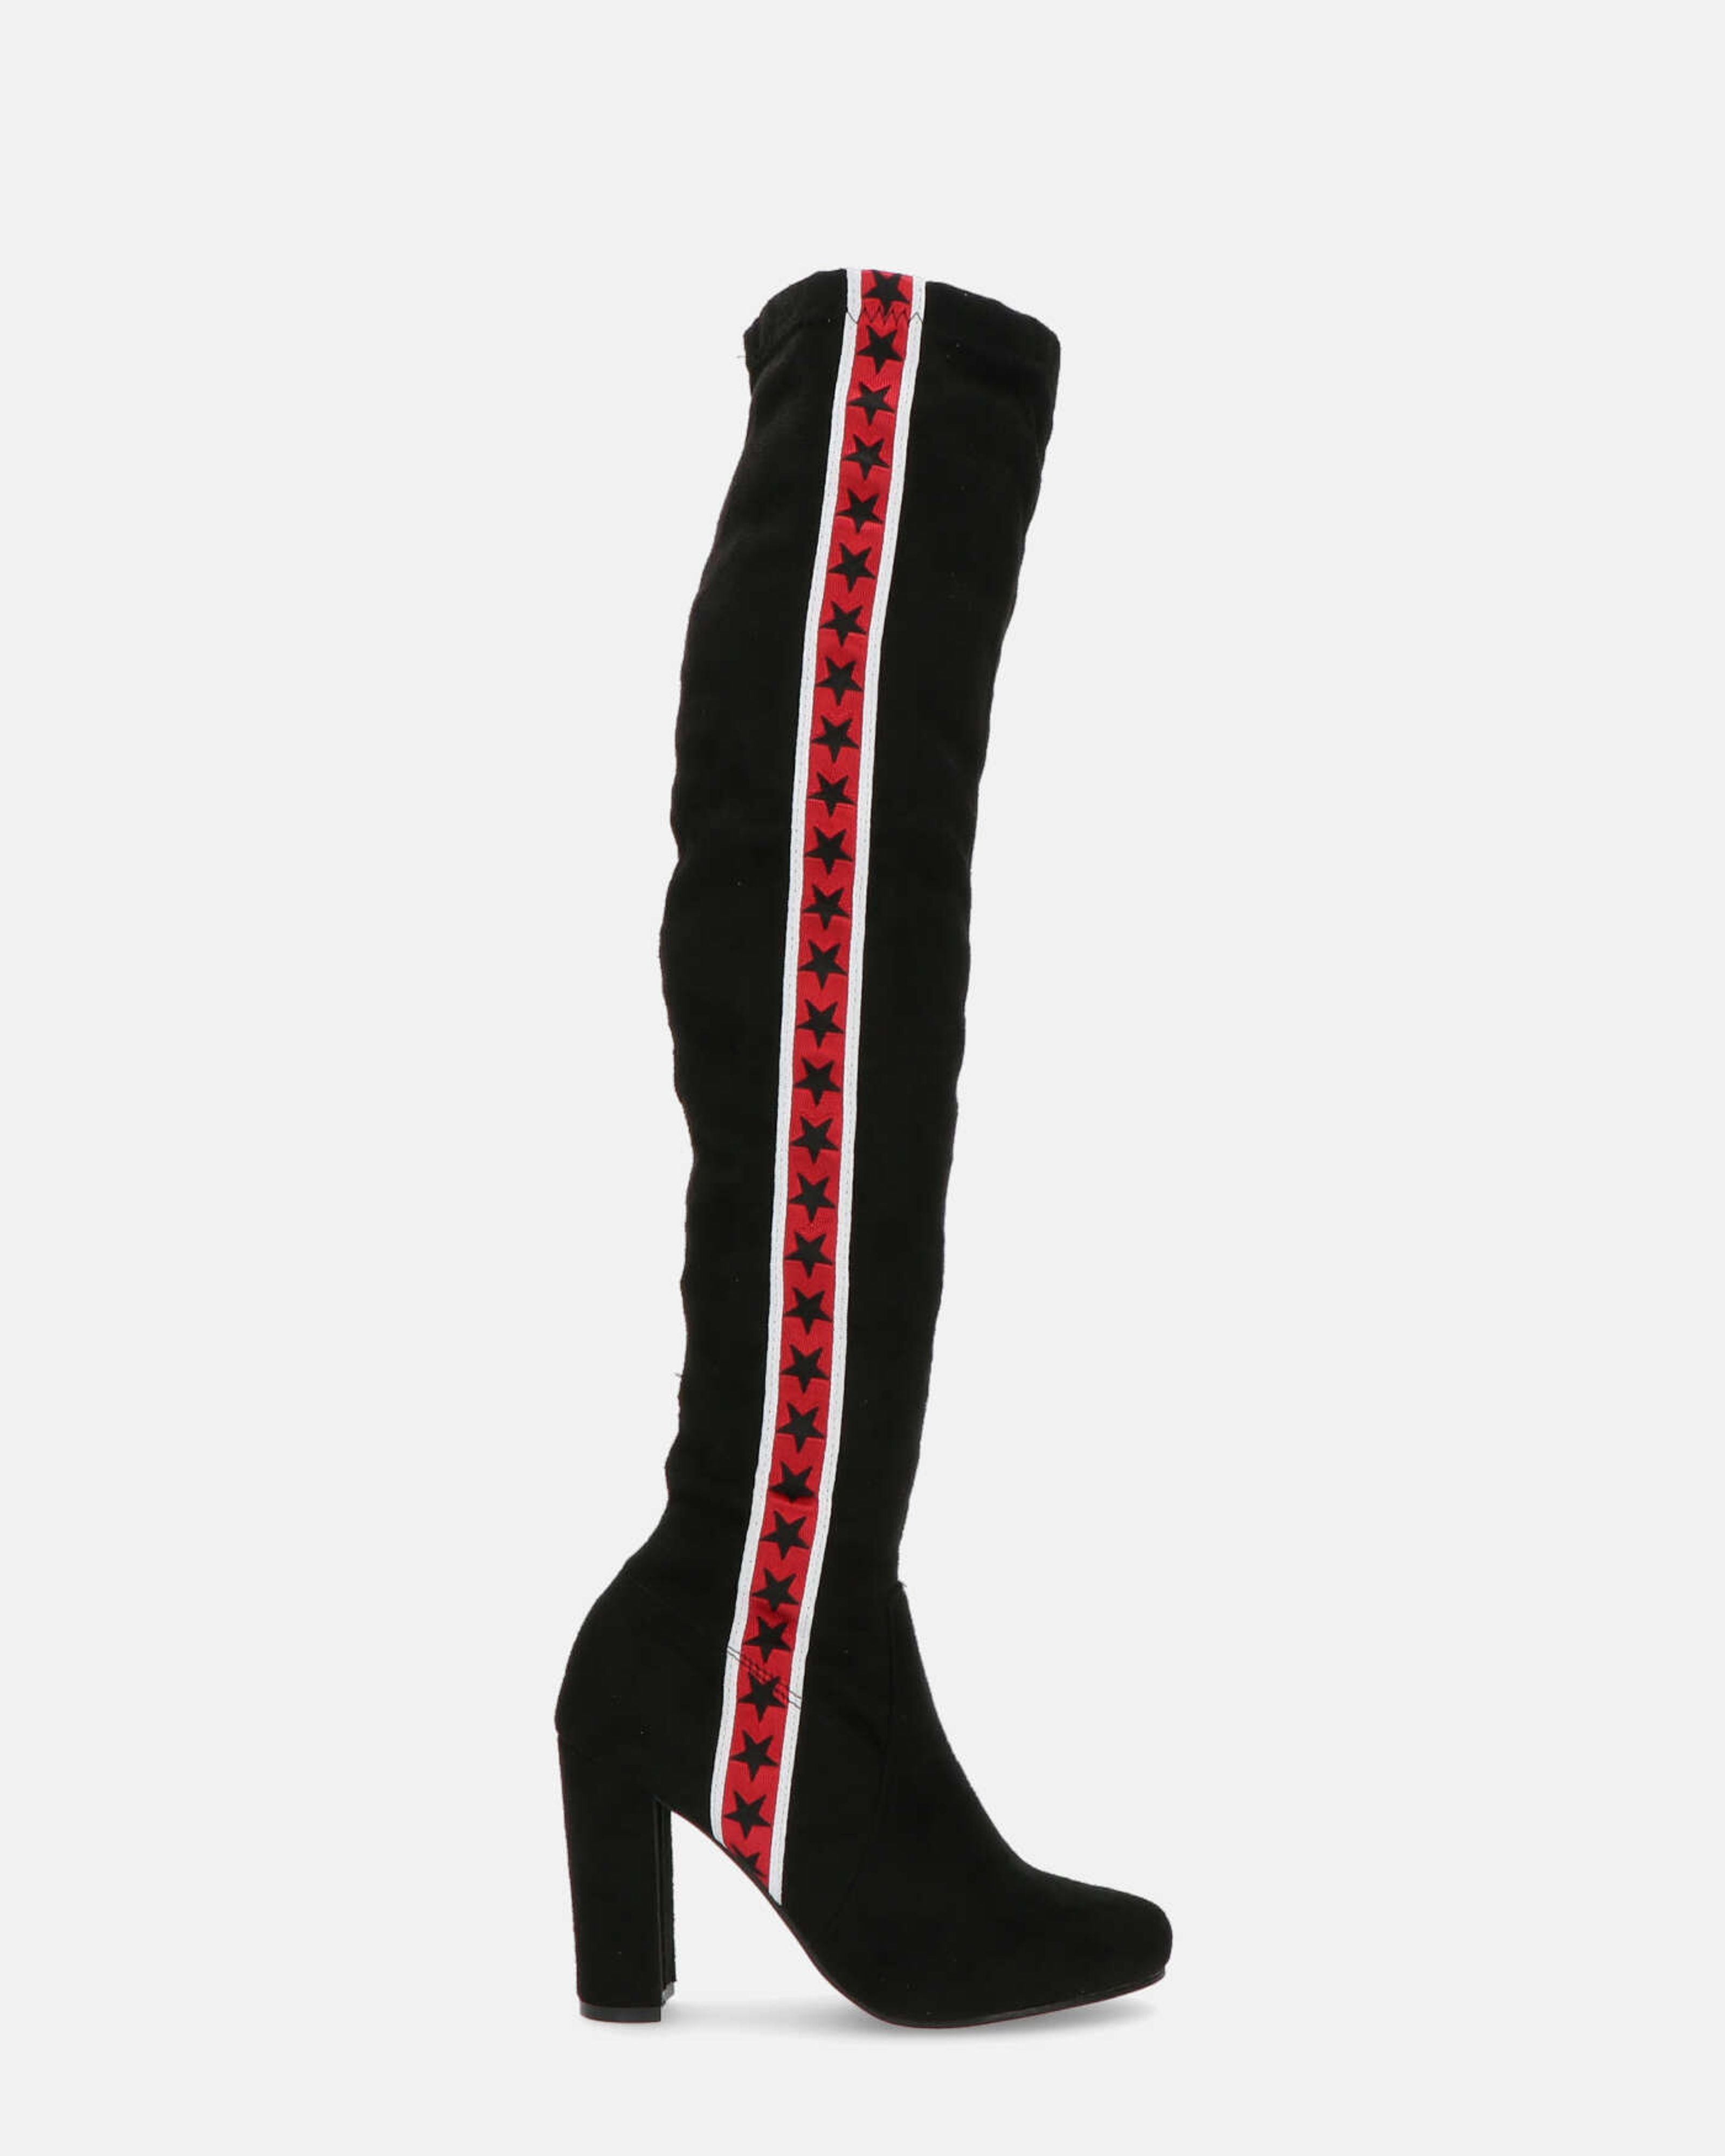 JENNEL - stivali sopra il ginocchio con tacco e striscia rossa stellata